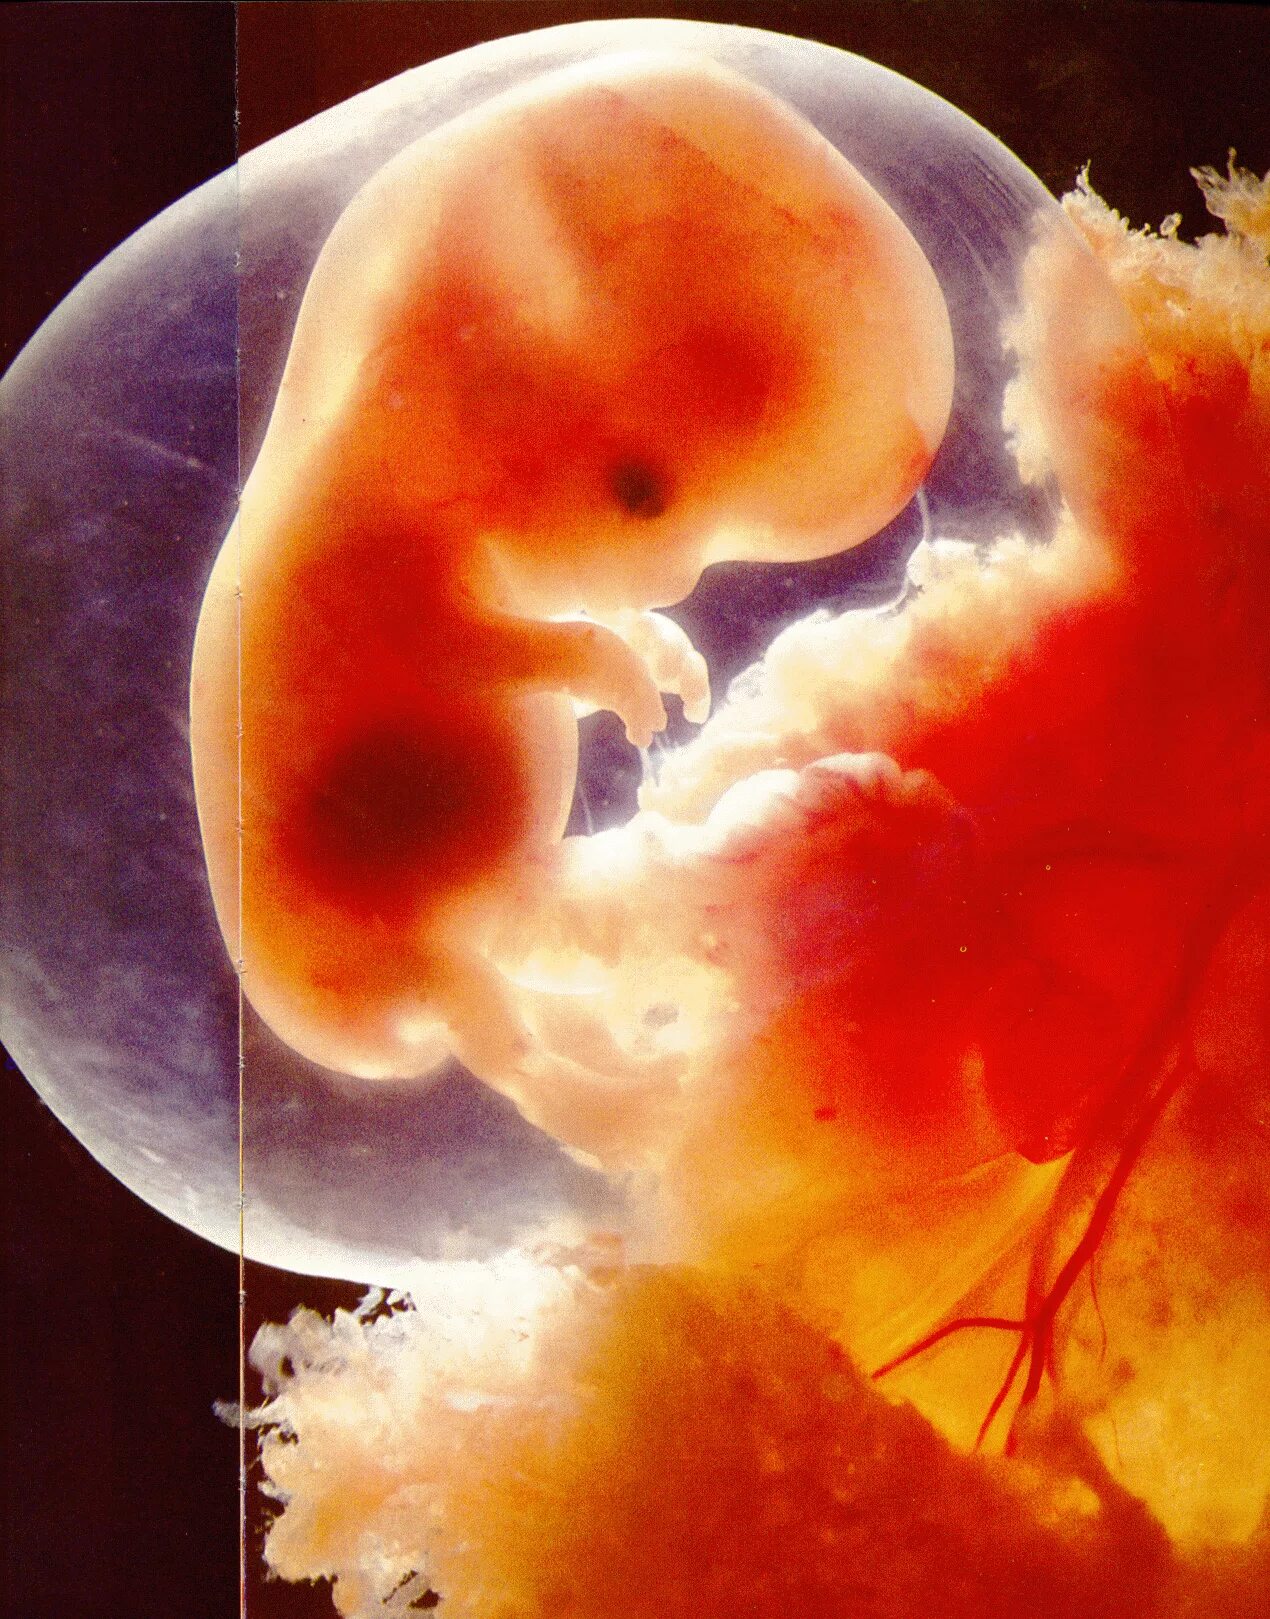 Недельный плод. Эмбрион на 8 неделе беременности. 8 Недель беременности фото эмбриона. Эмбрион на 9 неделе беременности. Человеческий эмбрион на 8 неделе беременности.